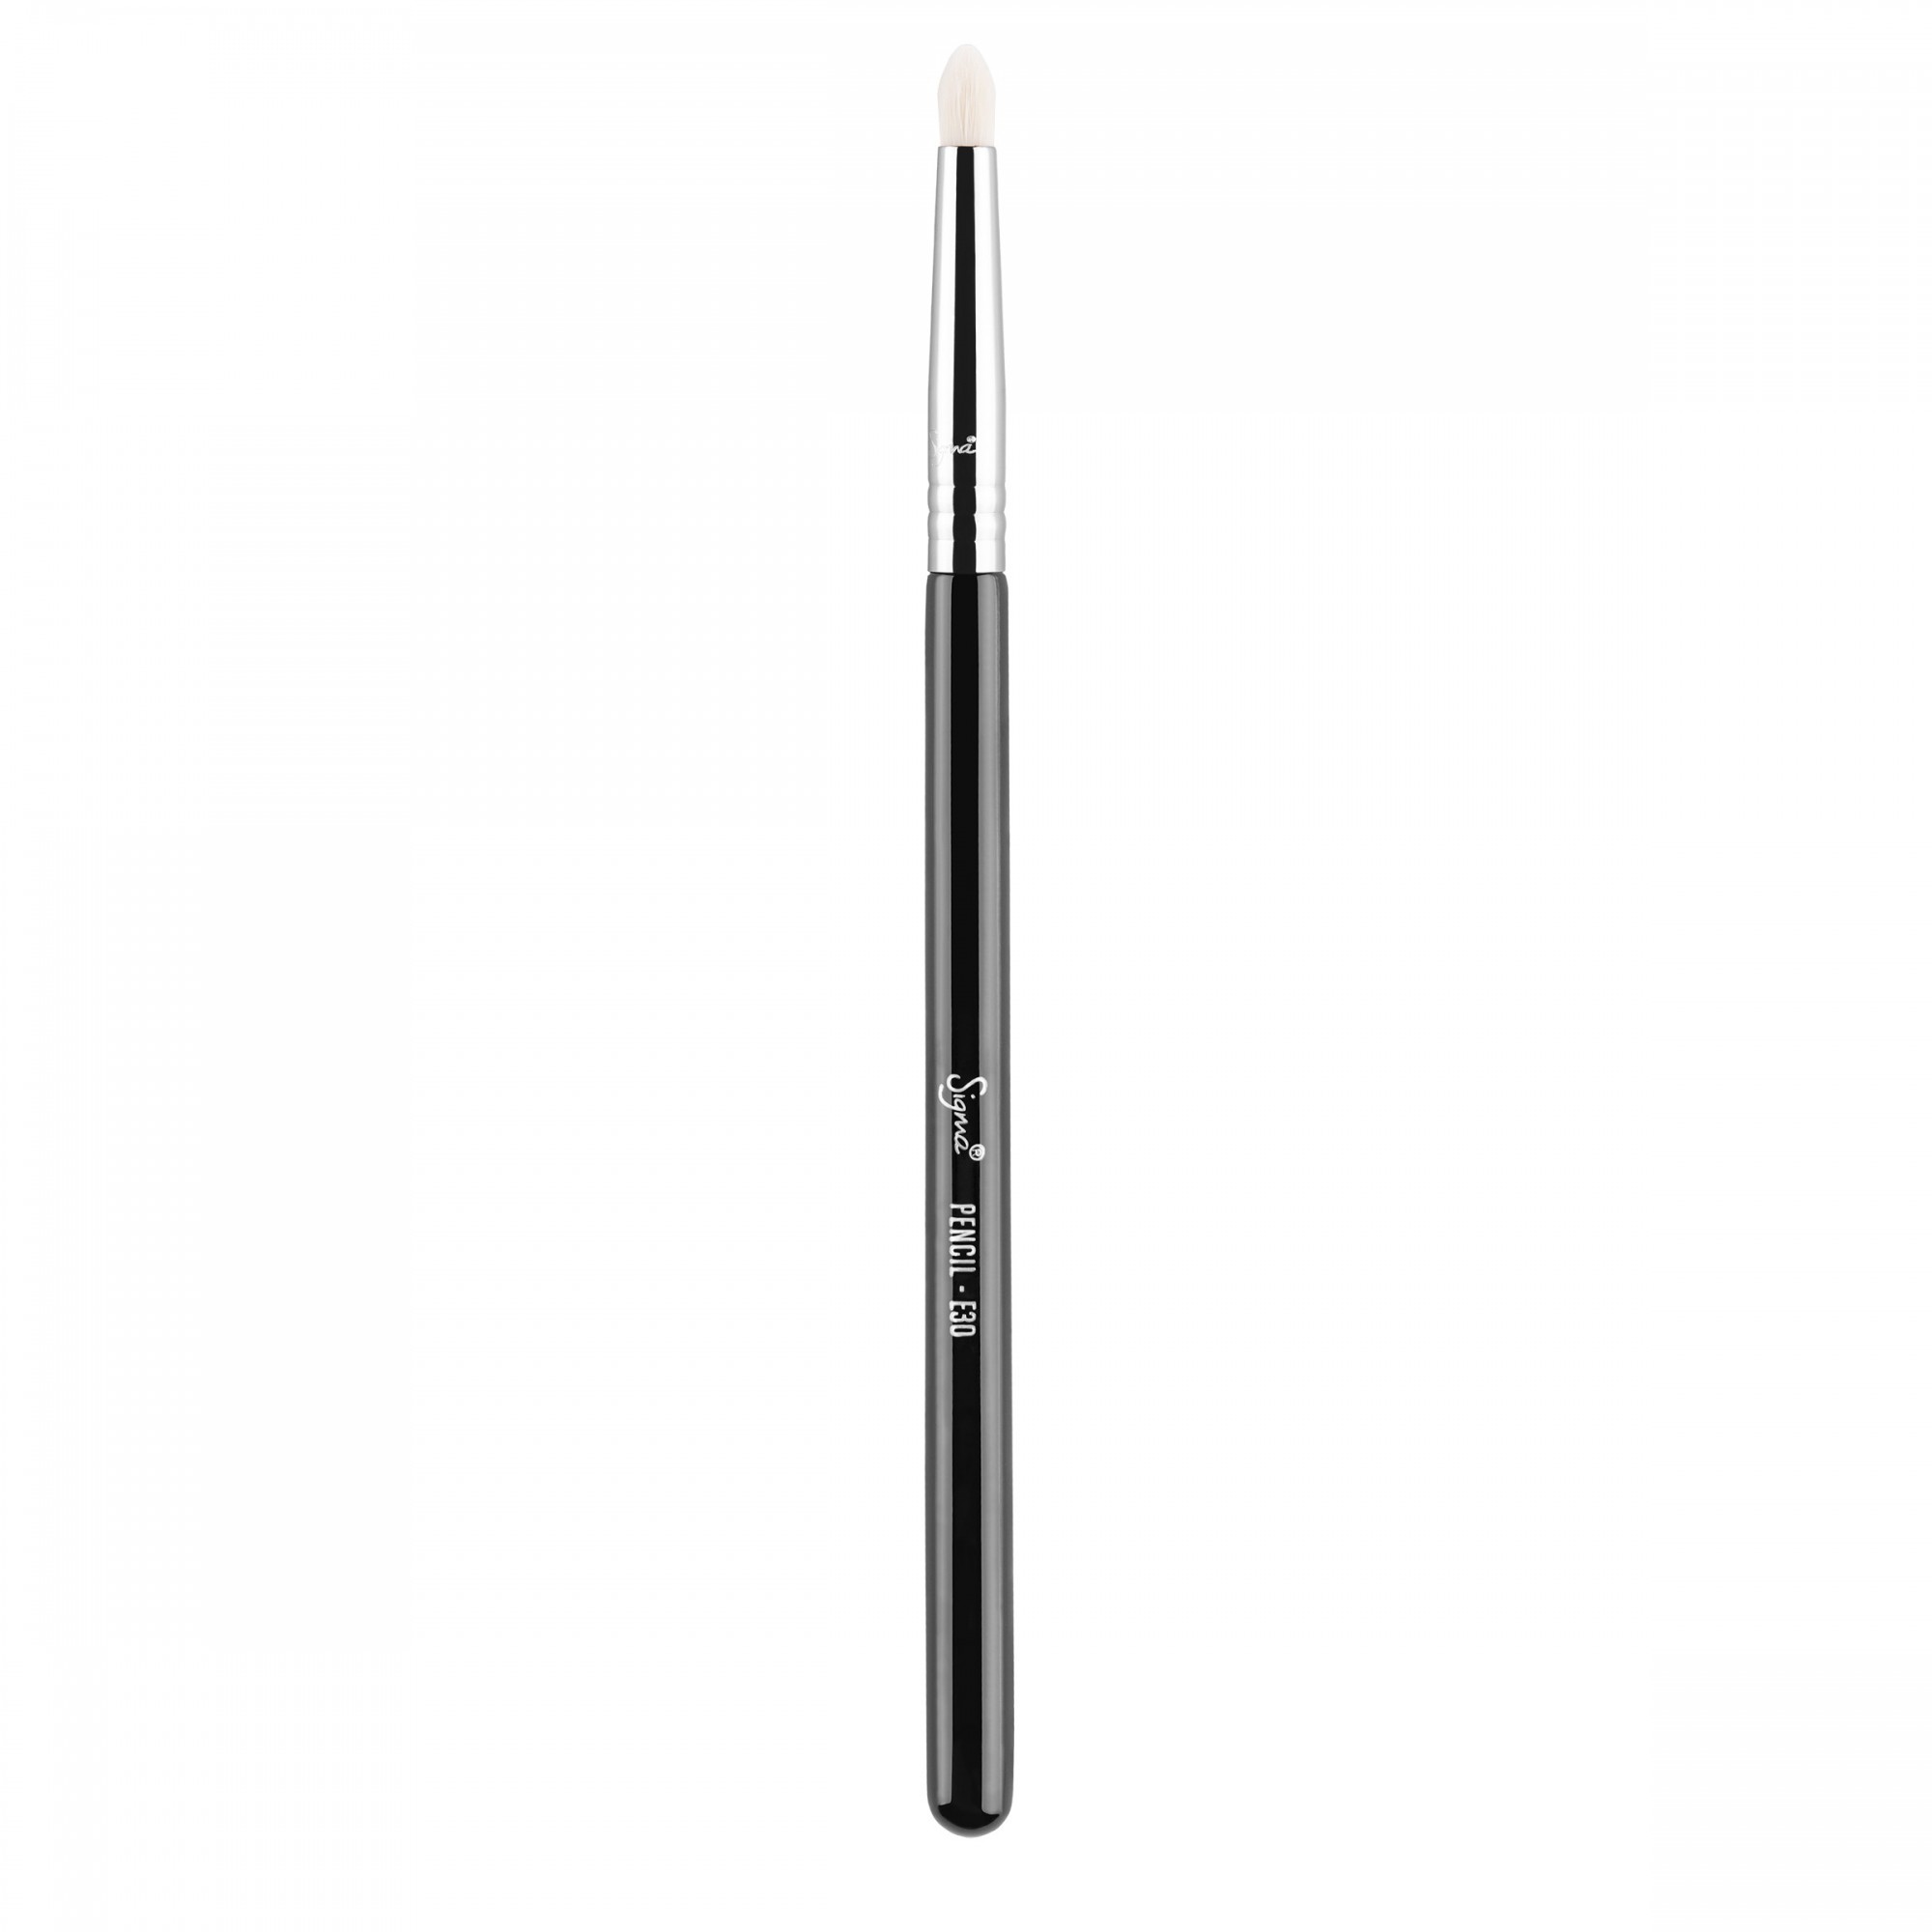 Sigma E30 - Pencil